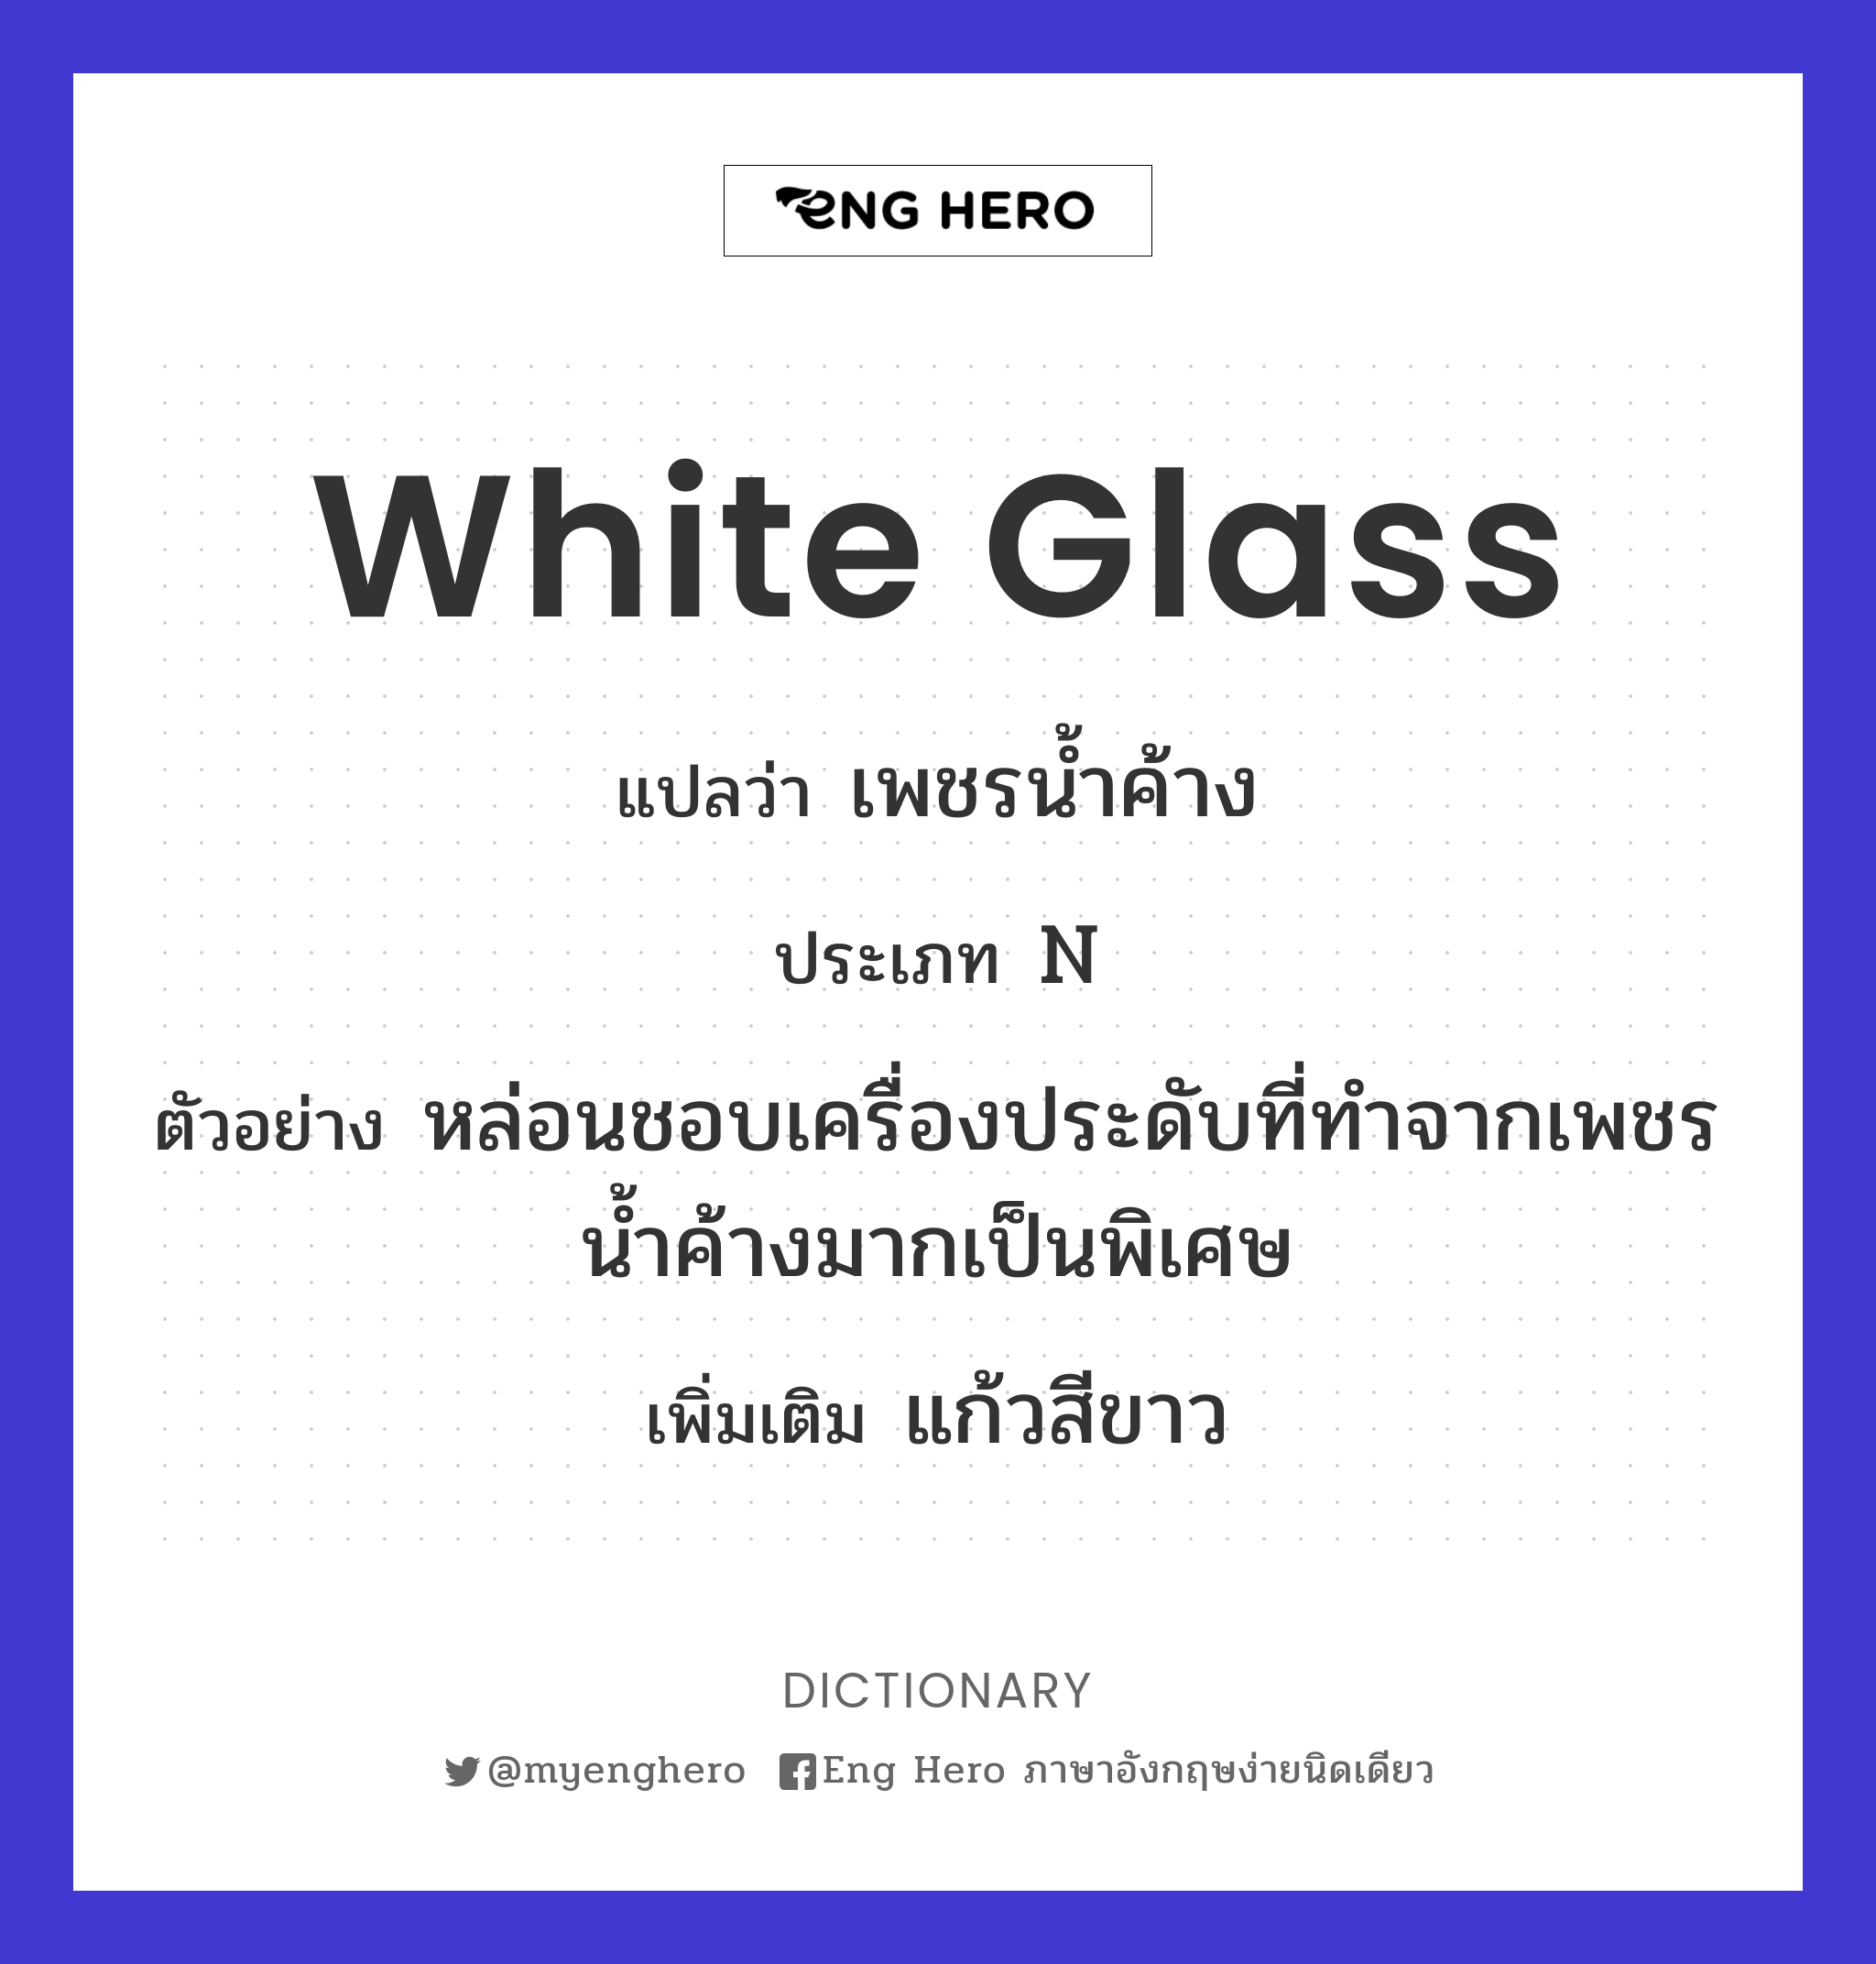 white glass